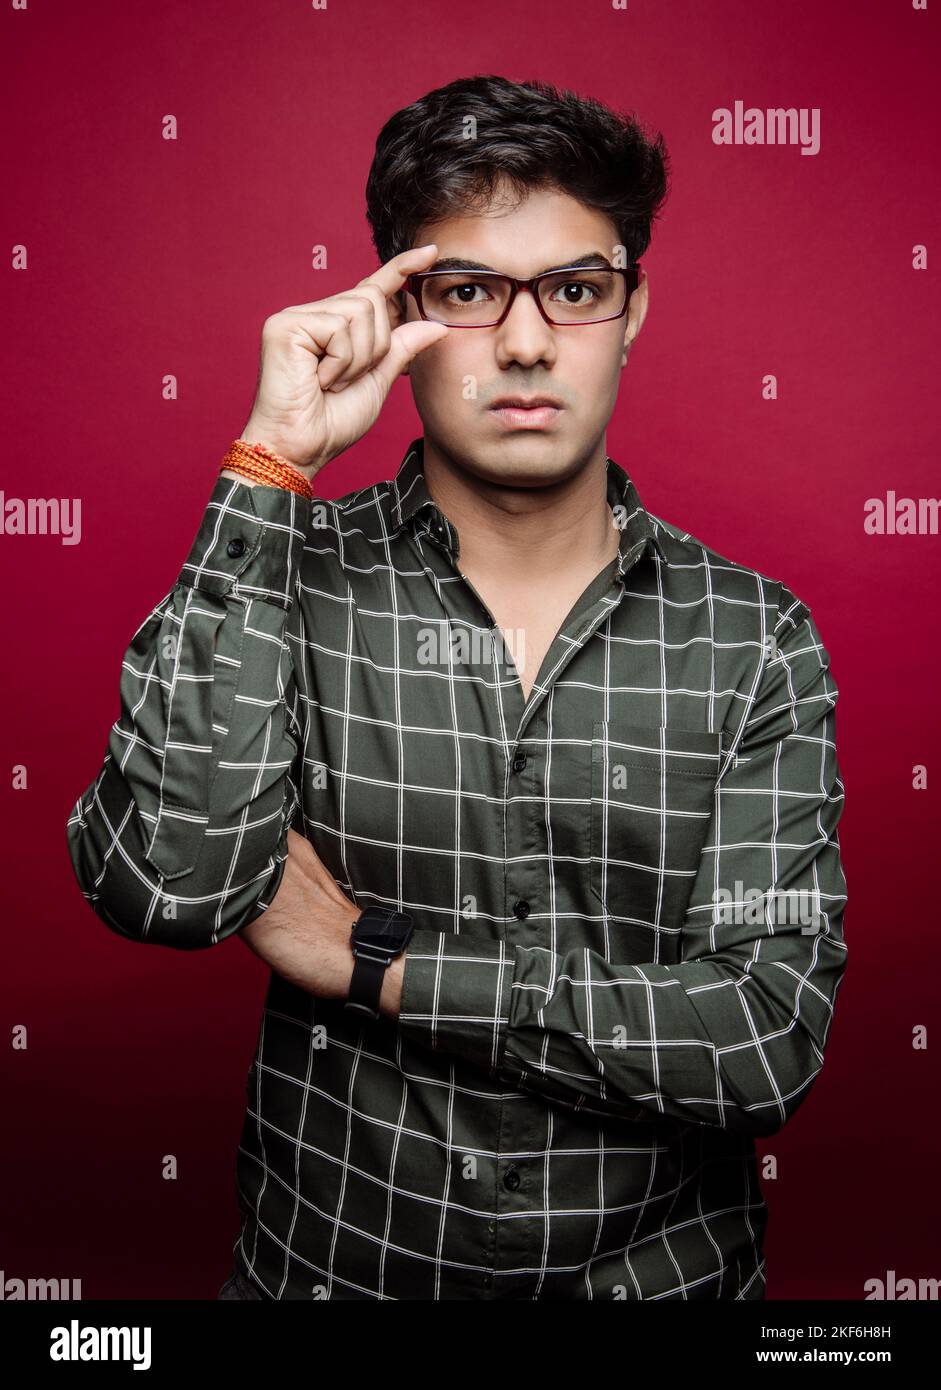 Portrait d'un homme d'Asie du Sud avec une expression sérieuse tout en tenant ses lunettes sur un fond rouge Banque D'Images